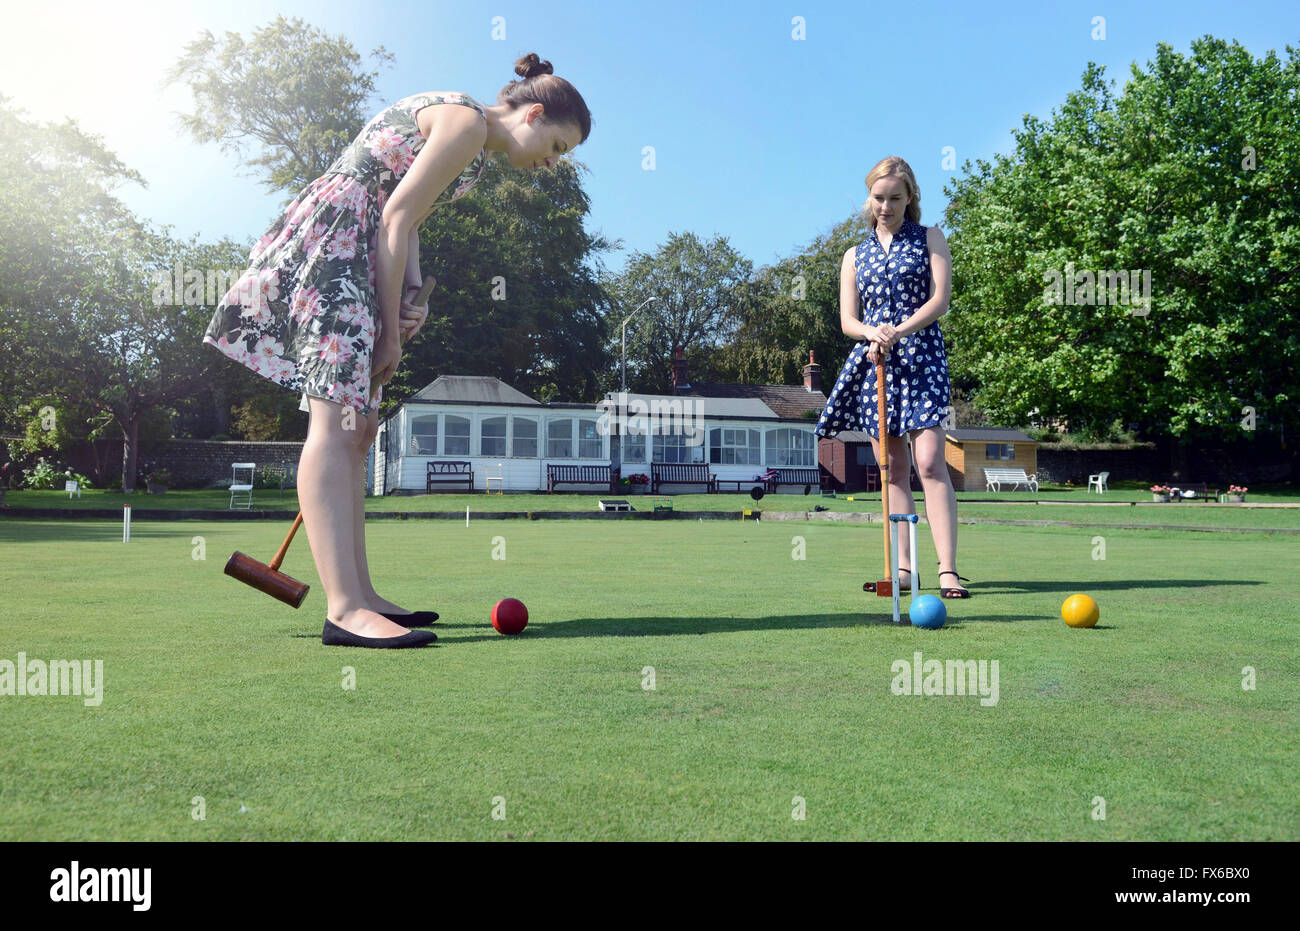 Les femmes de race blanche jouer au croquet sur la pelouse Banque D'Images